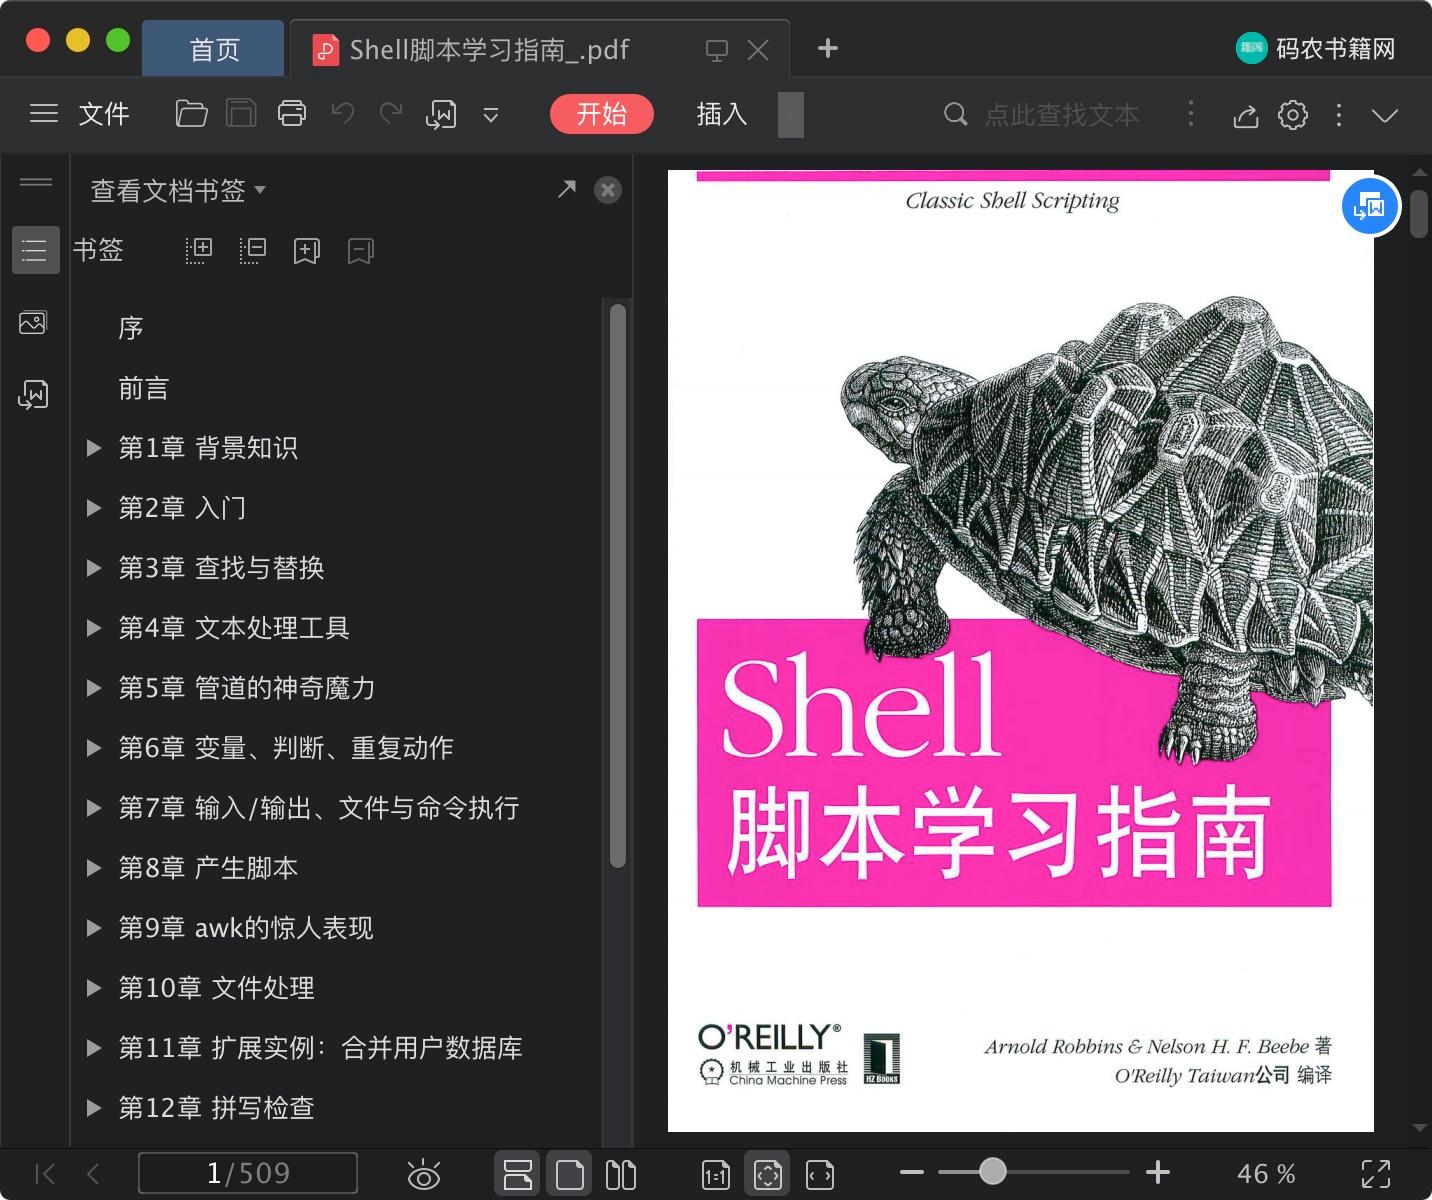 Shell脚本学习指南pdf电子书籍下载百度云